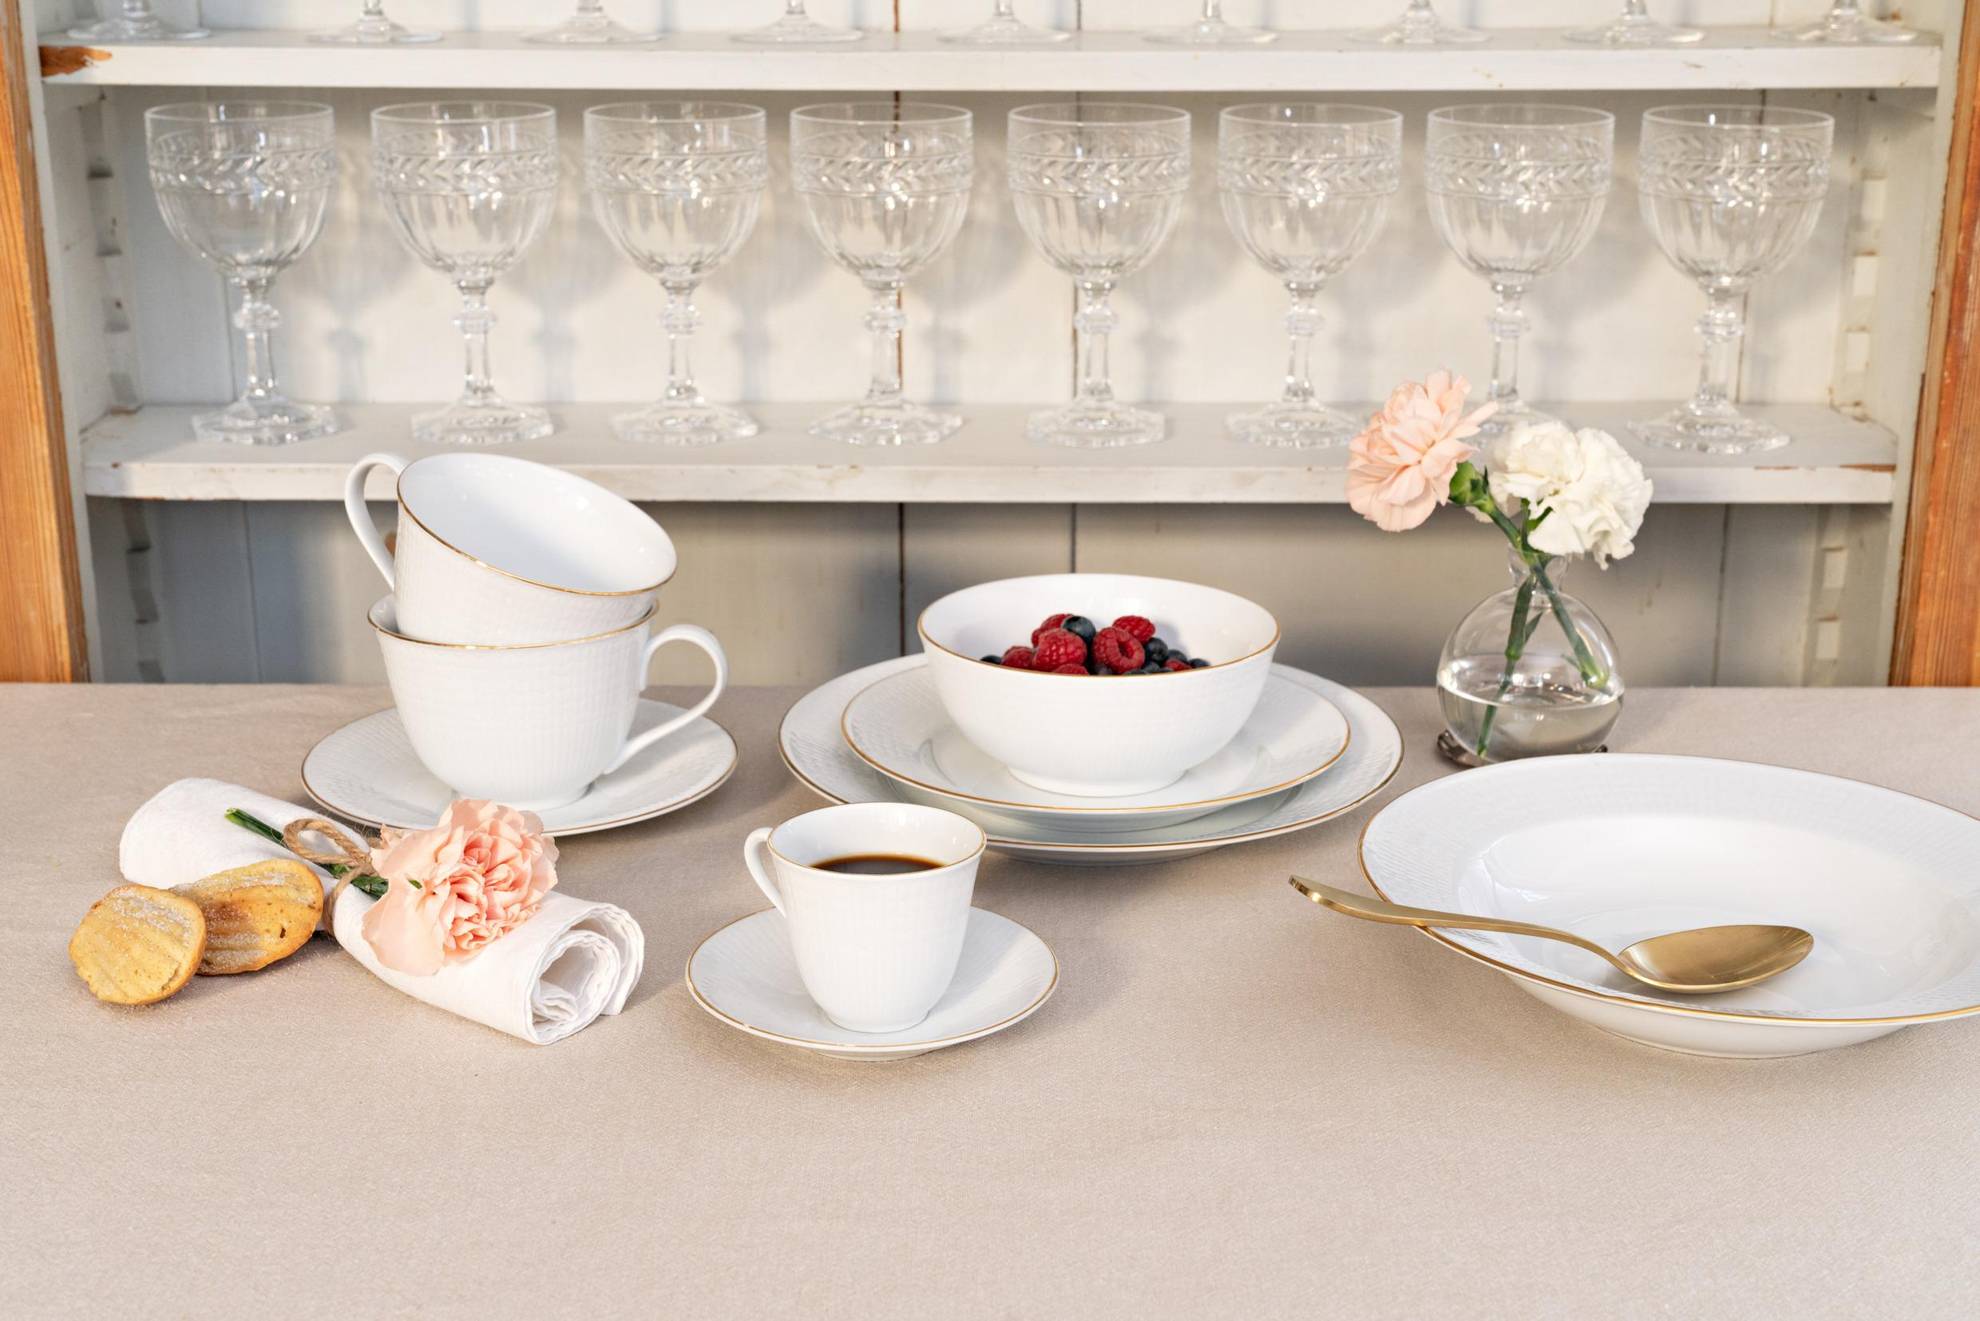 Een serviesservice genaamd "Swedish Grace" op een tafel. Borden in verschillende maten een kom met bessen, twee theekopjes en een kopje koffie. Daarachter is een witte plank met verschillende wijnglazen.